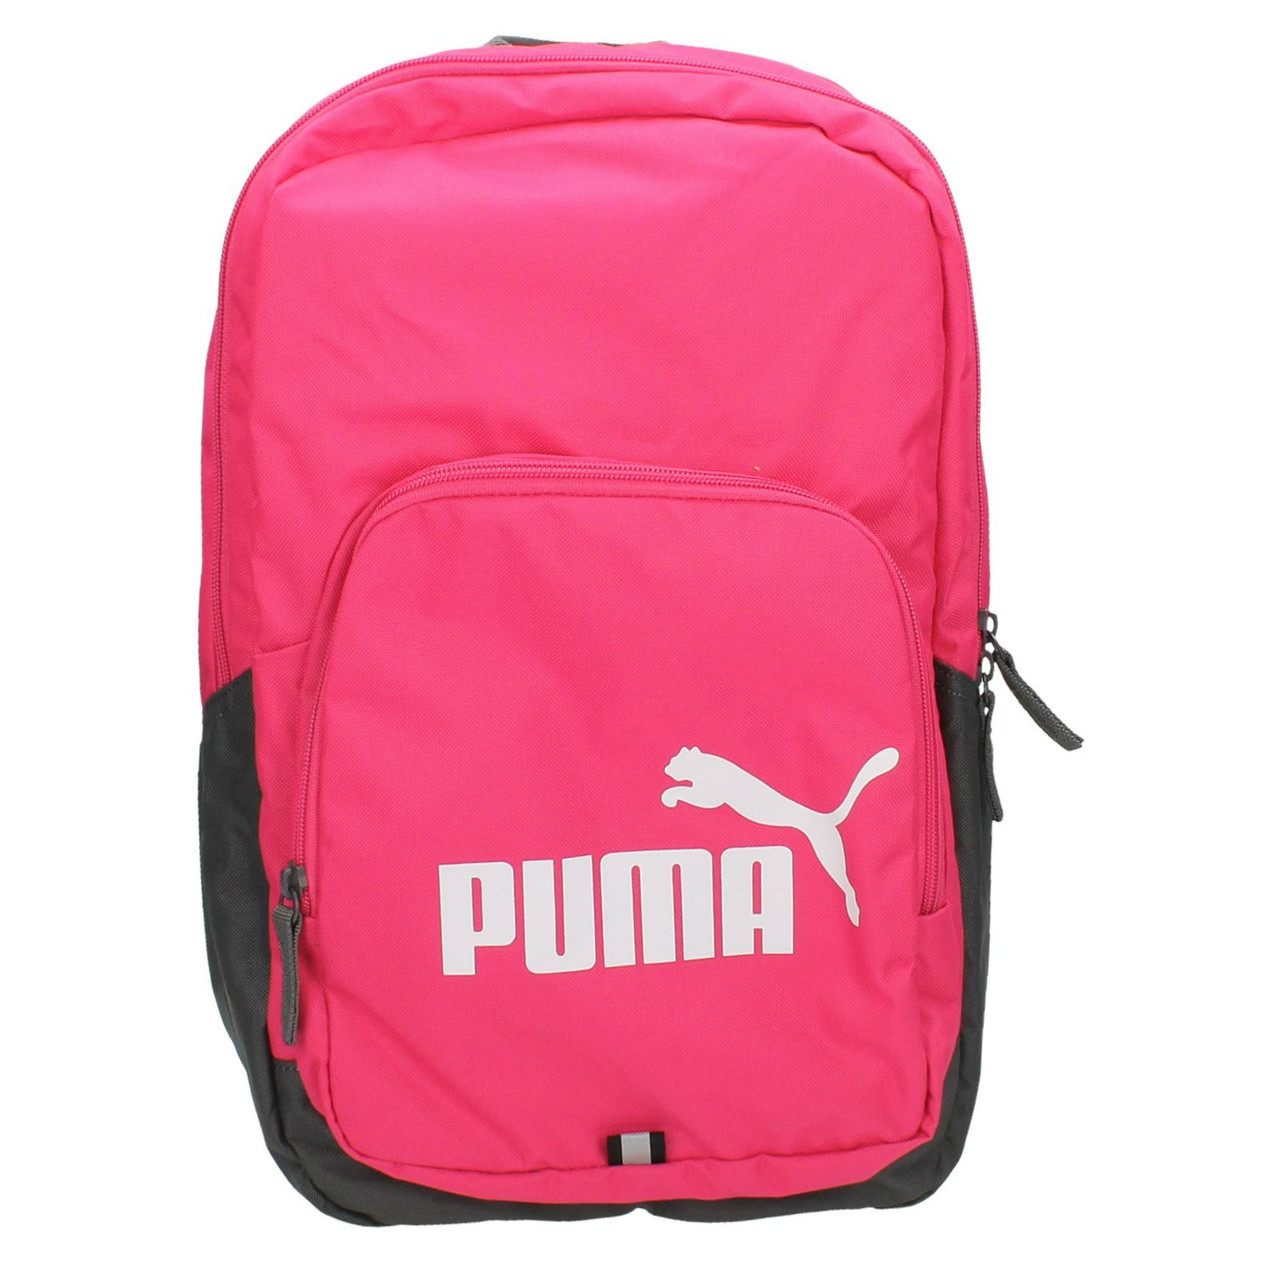 buy puma school bags